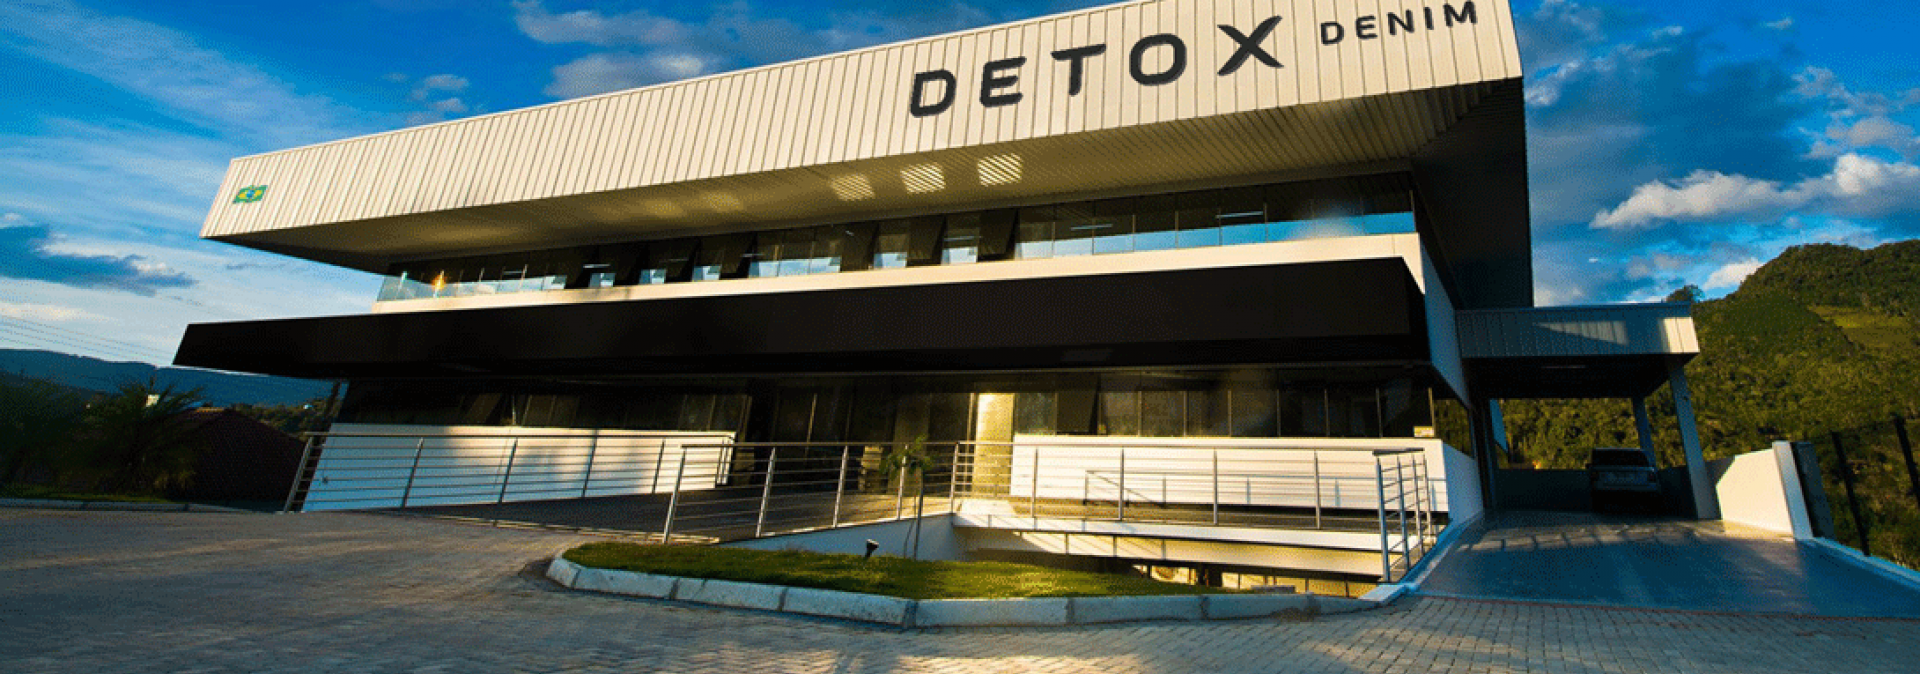 Empresa Detox Denim